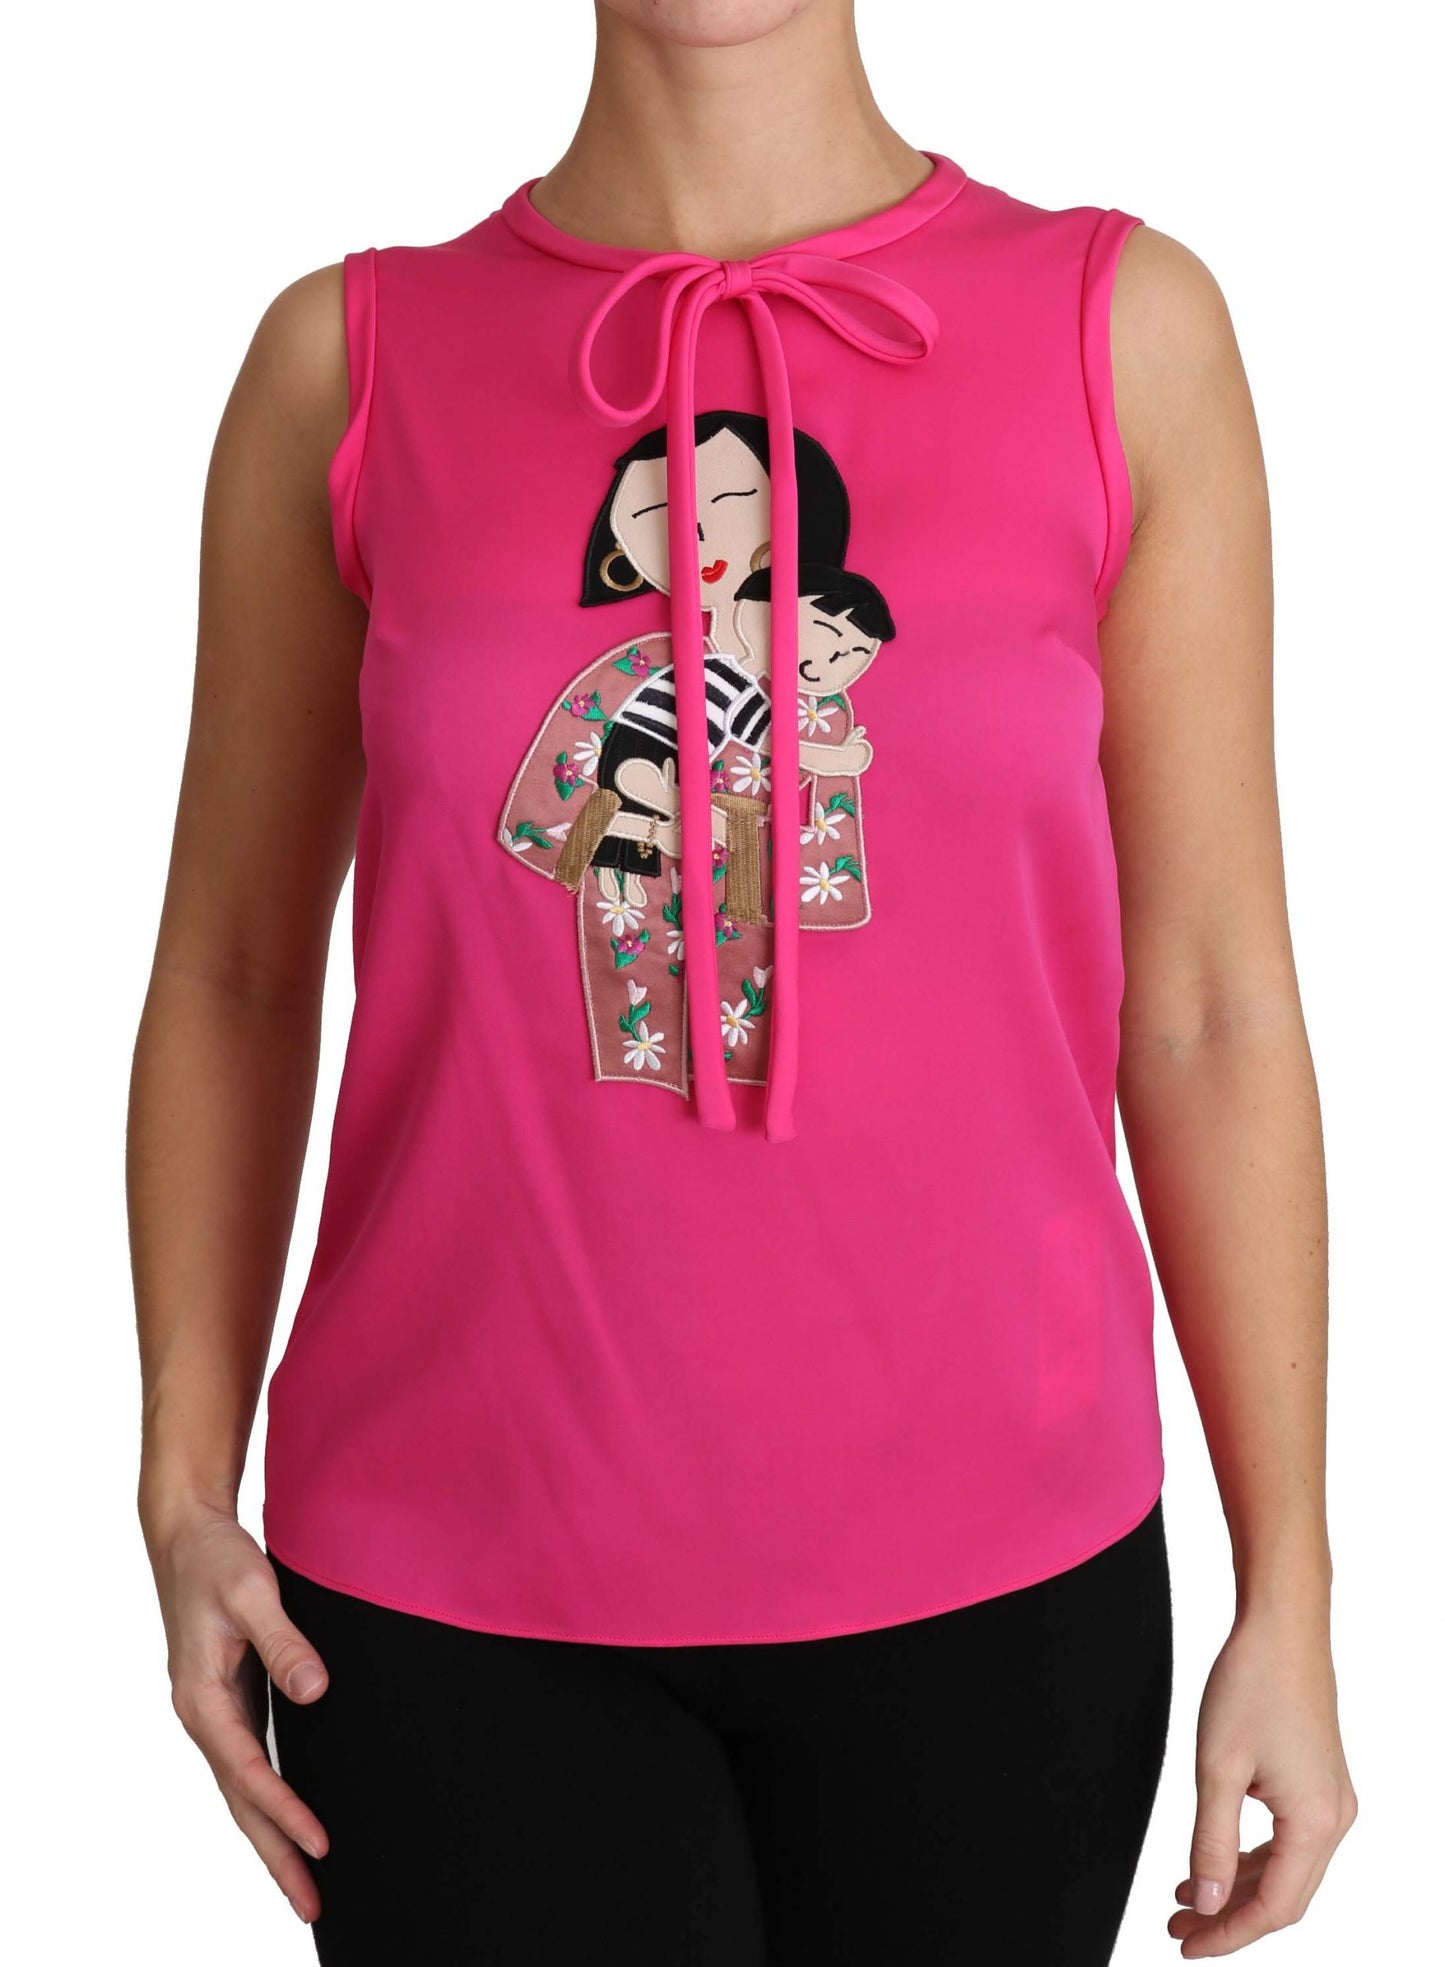 Elegant Pink Silk Family Tank Top Shirt